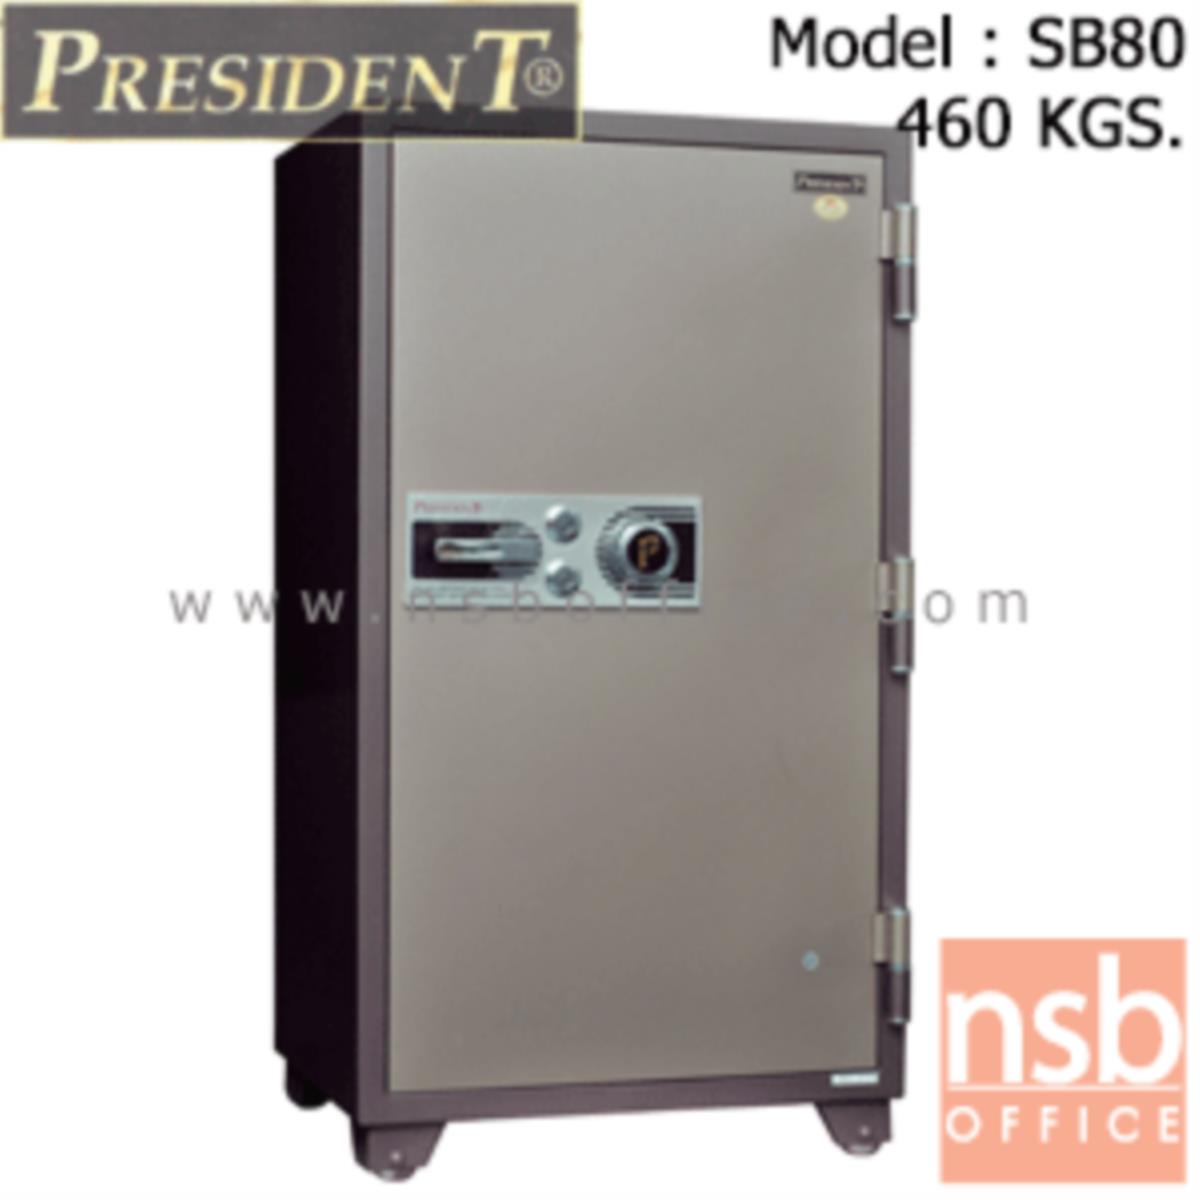 F05A038:ตู้เซฟนิรภัยชนิดหมุน 460 กก. รุ่น PRESIDENT-SB80 มี 2 กุญแจ 1 รหัส (รหัสใช้หมุนหน้าตู้)   